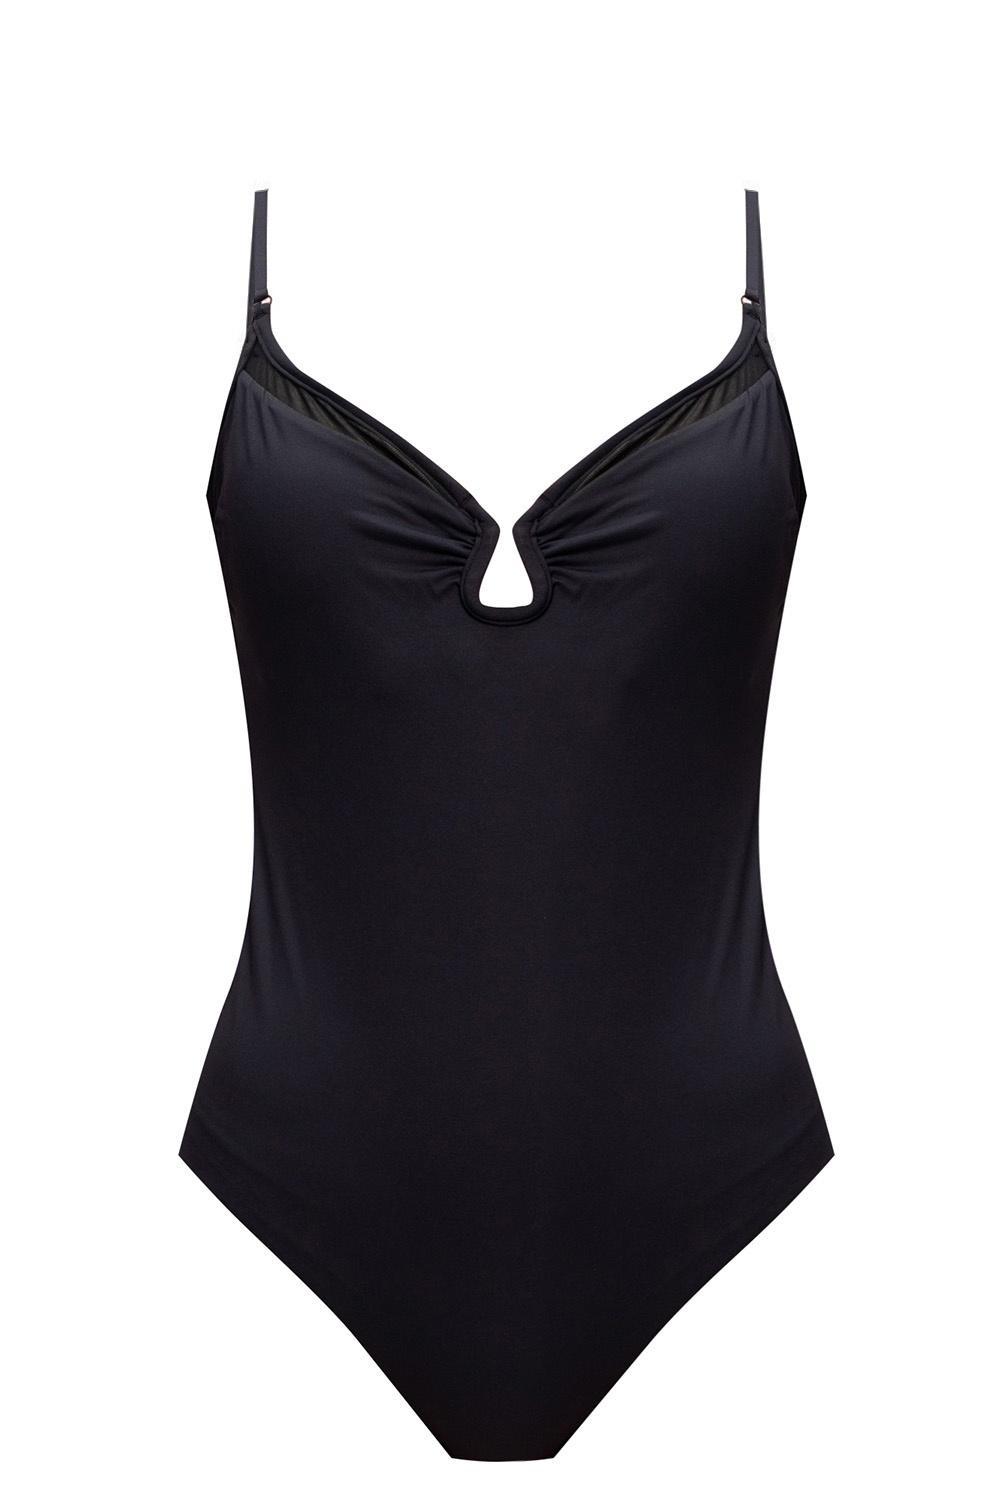 Zimmermann One-piece Swimsuit in Black - Lyst